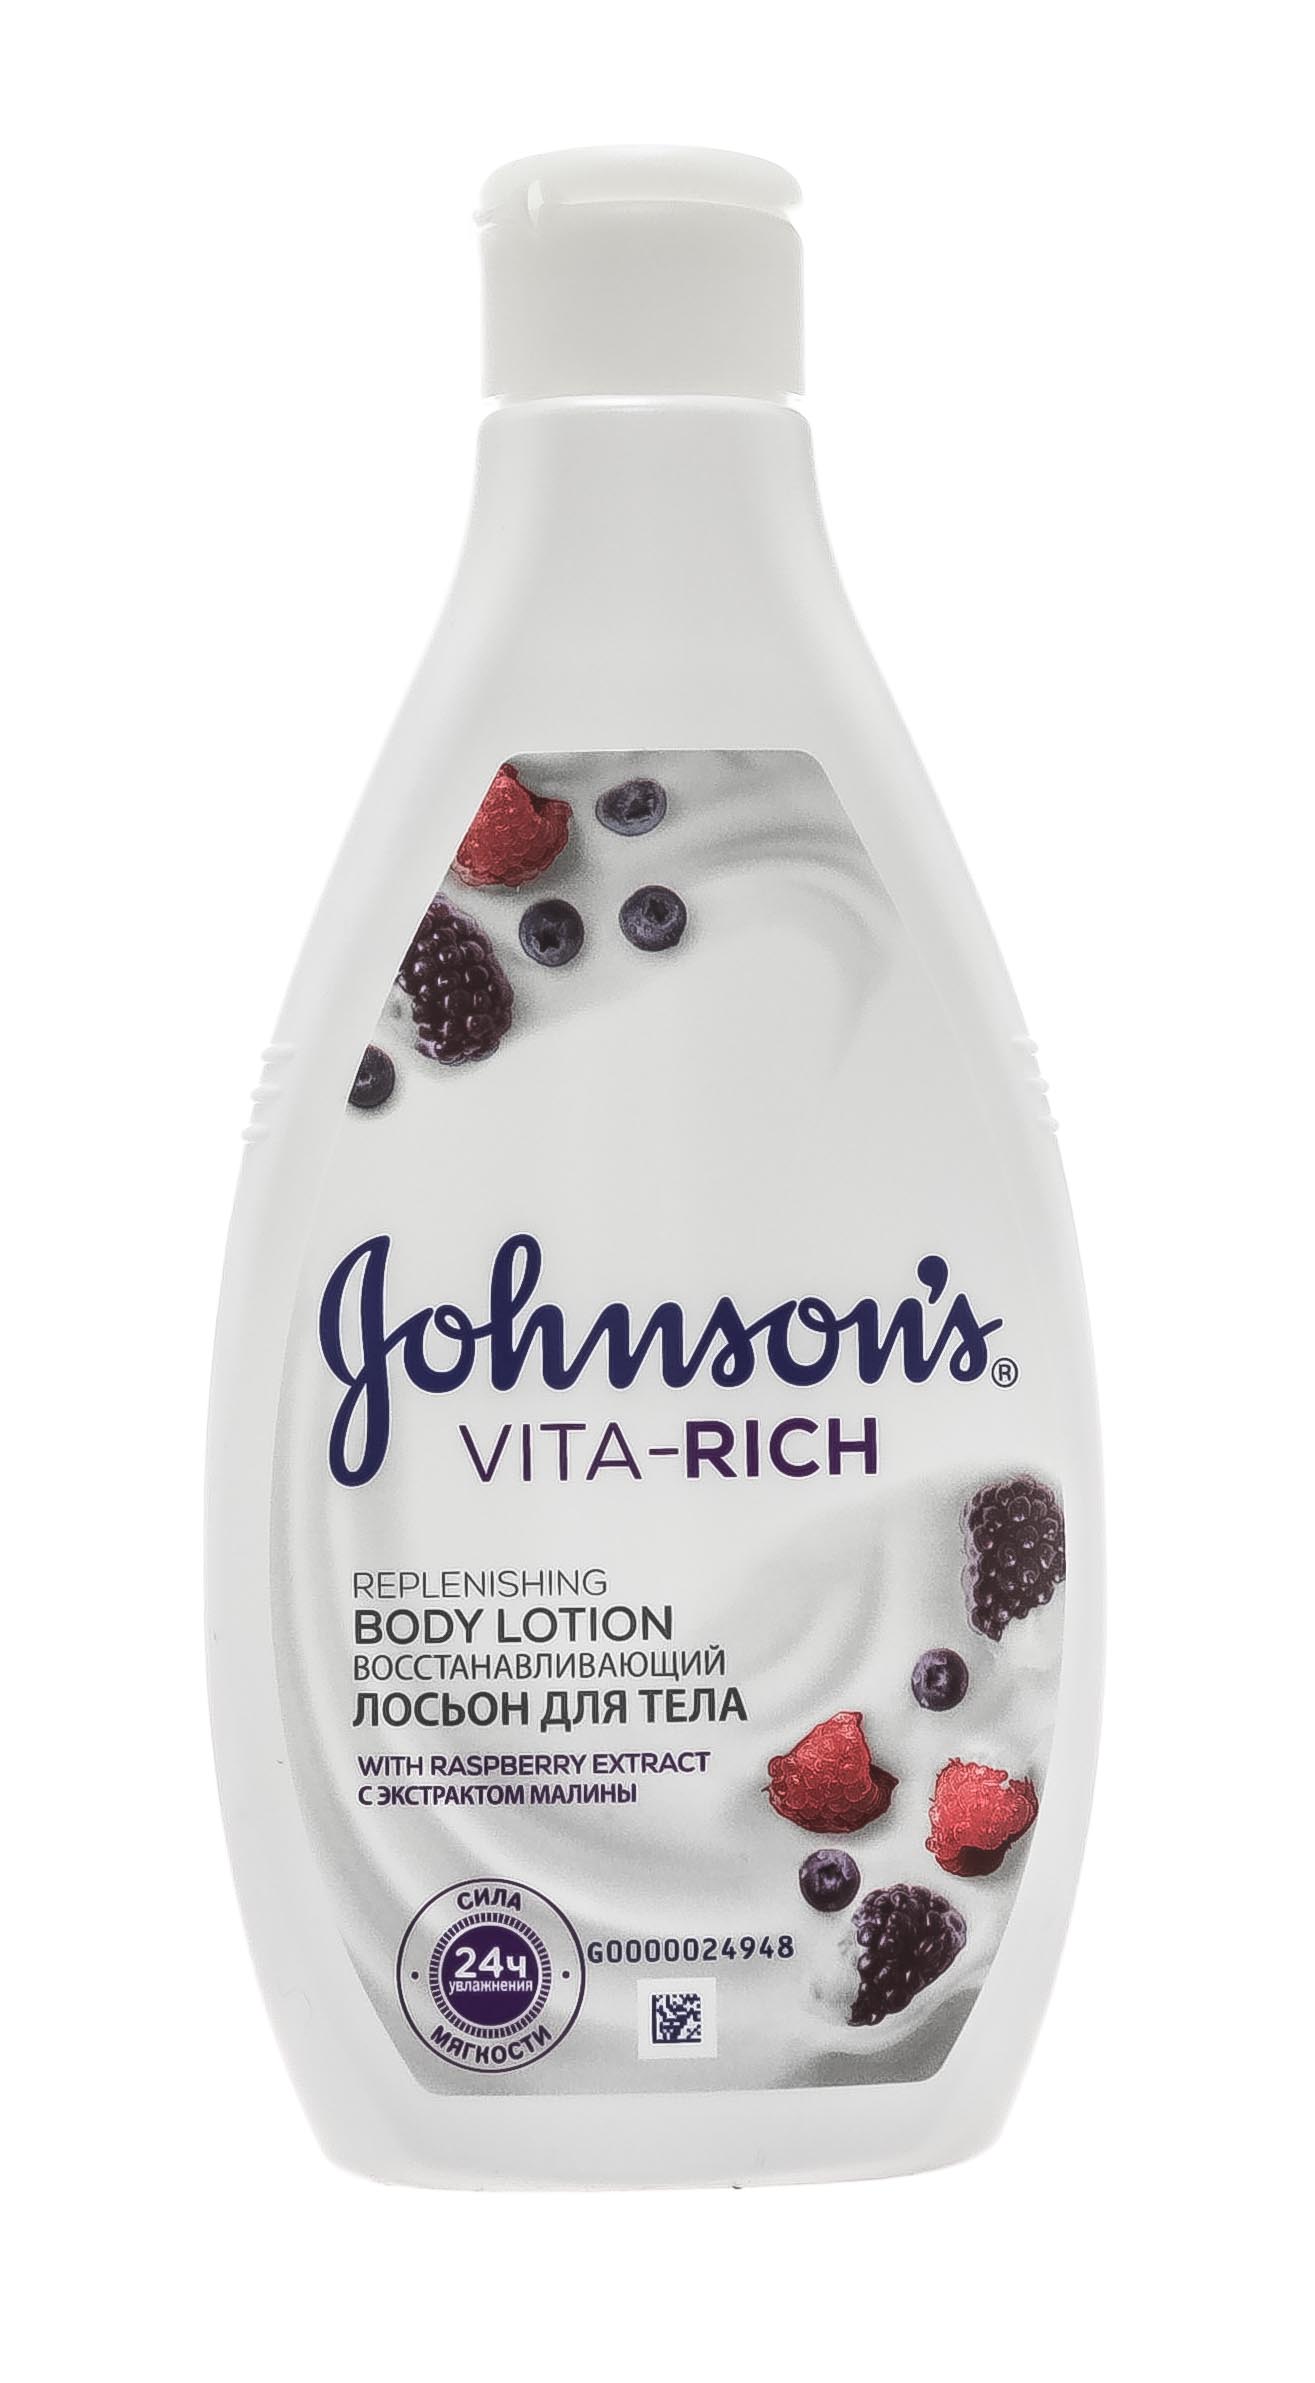 Купить Johnson's Baby Лосьон для тела с экстрактом малины «Johnson's Vita-Rich Восстанавливающий», 250 мл (Johnson's Baby, Care VITA-RICH), США